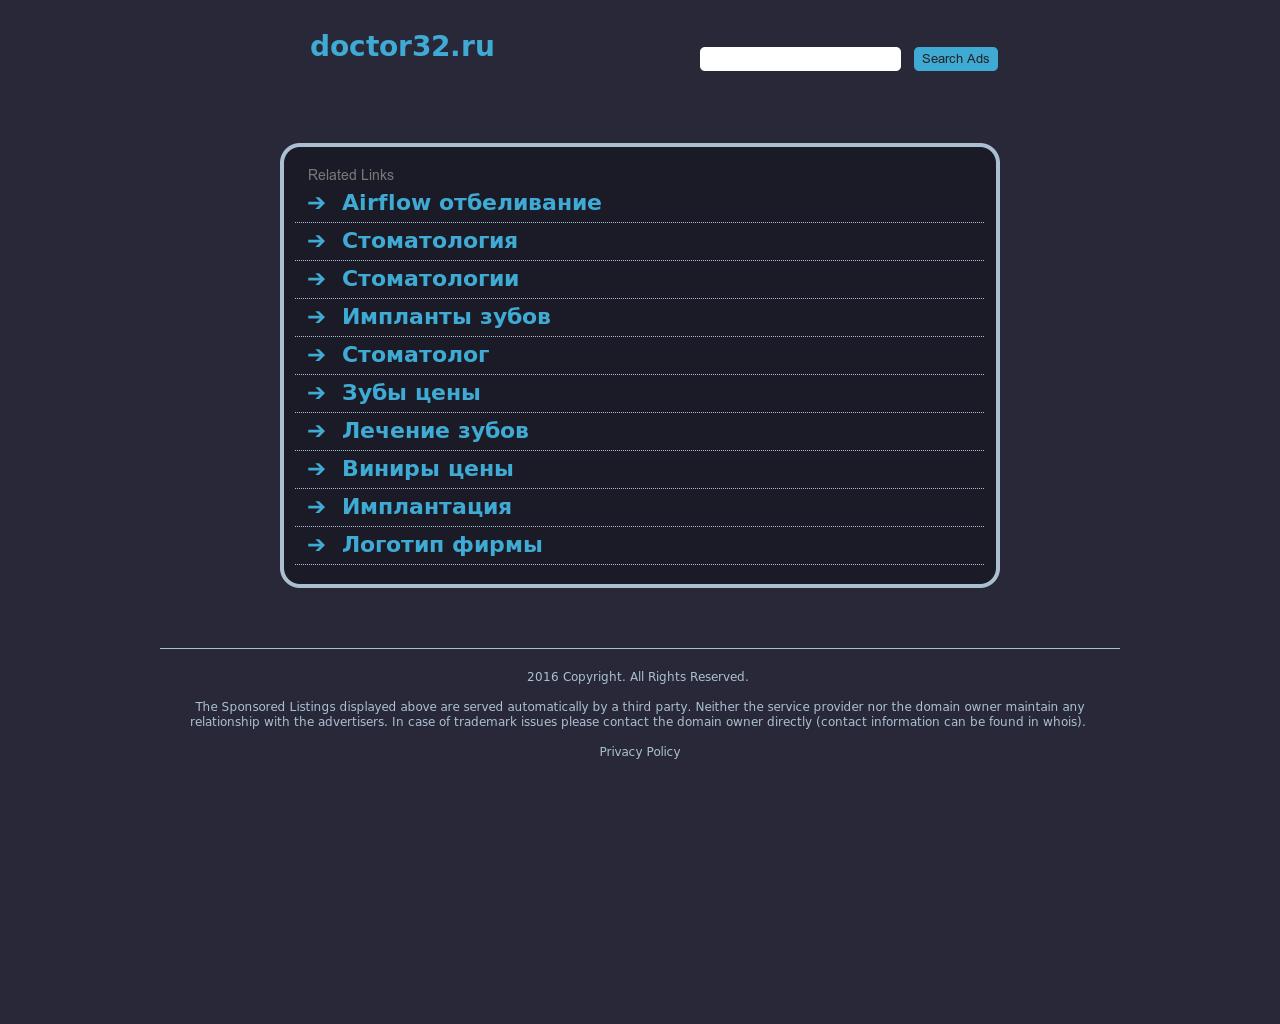 Изображение сайта doctor32.ru в разрешении 1280x1024